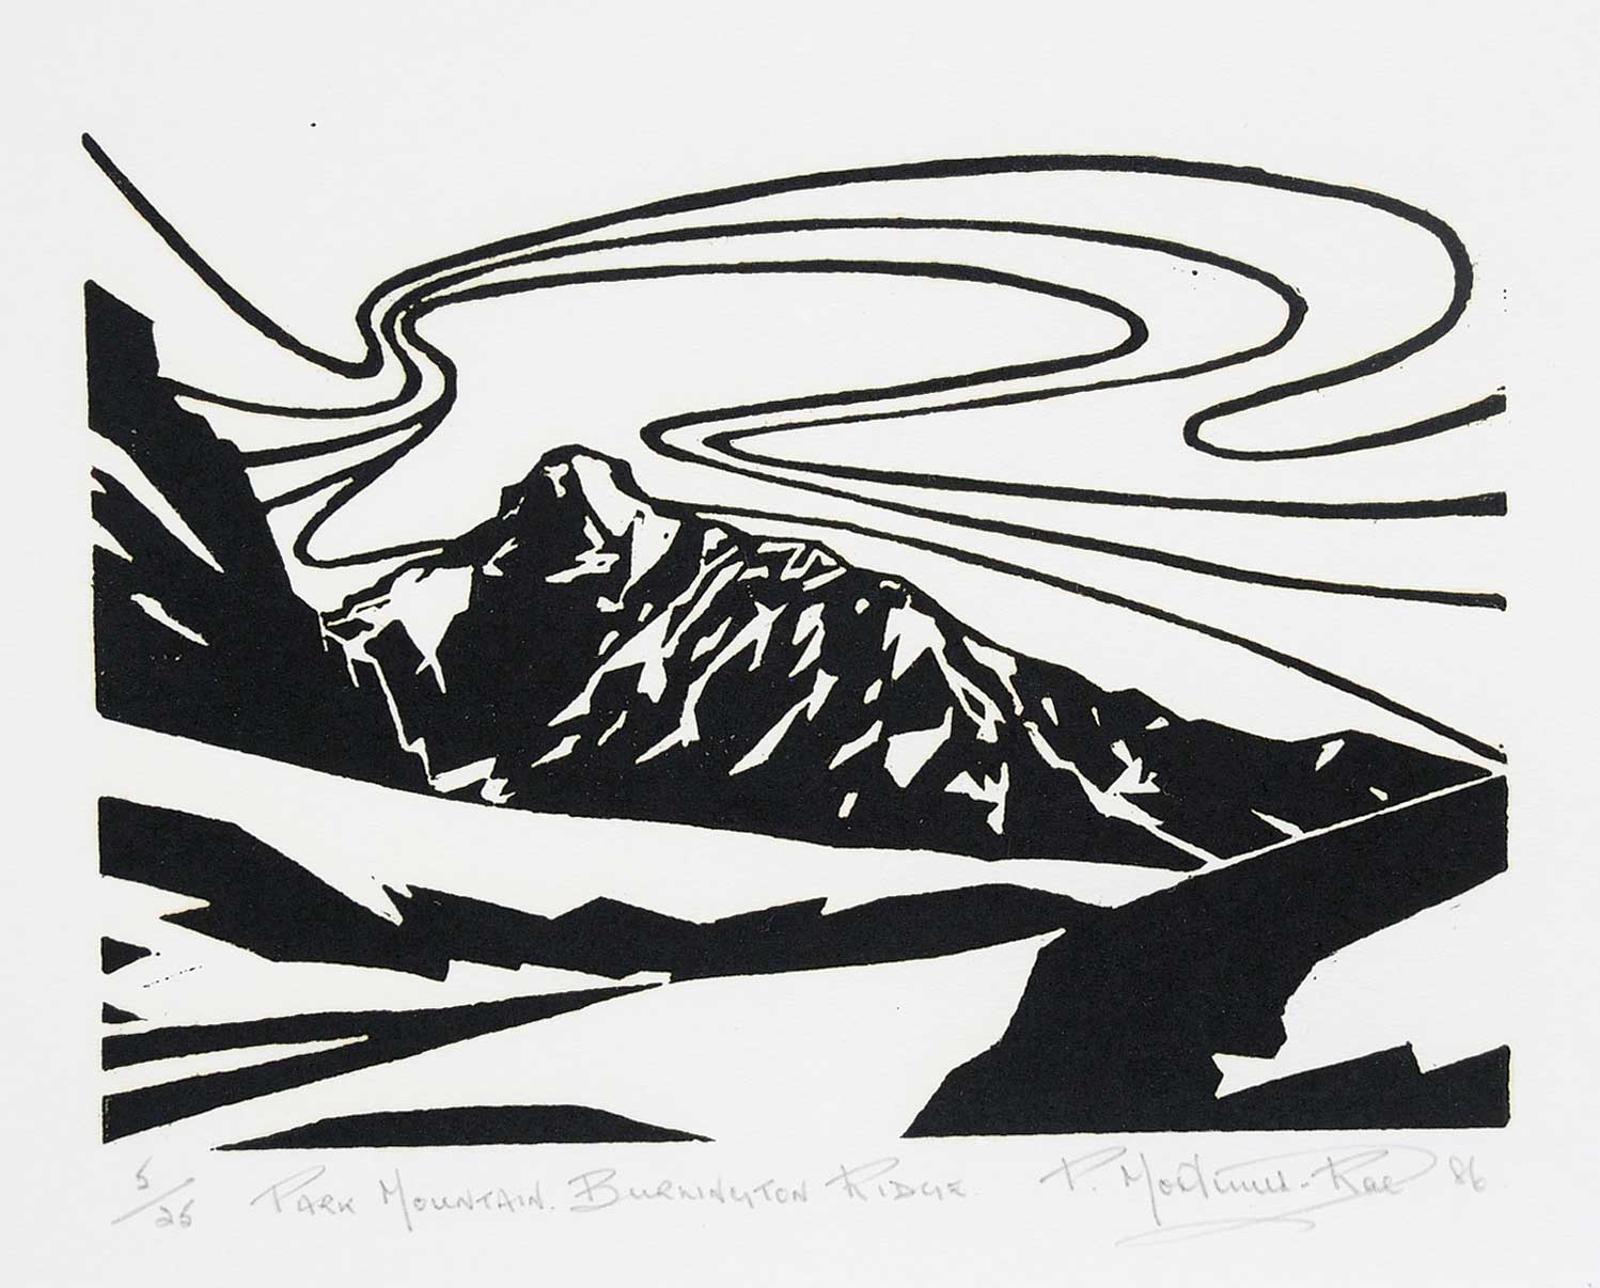 Peter Mortimer-Rae (1931) - Park Mountain, Burlington Ridge  #5/25